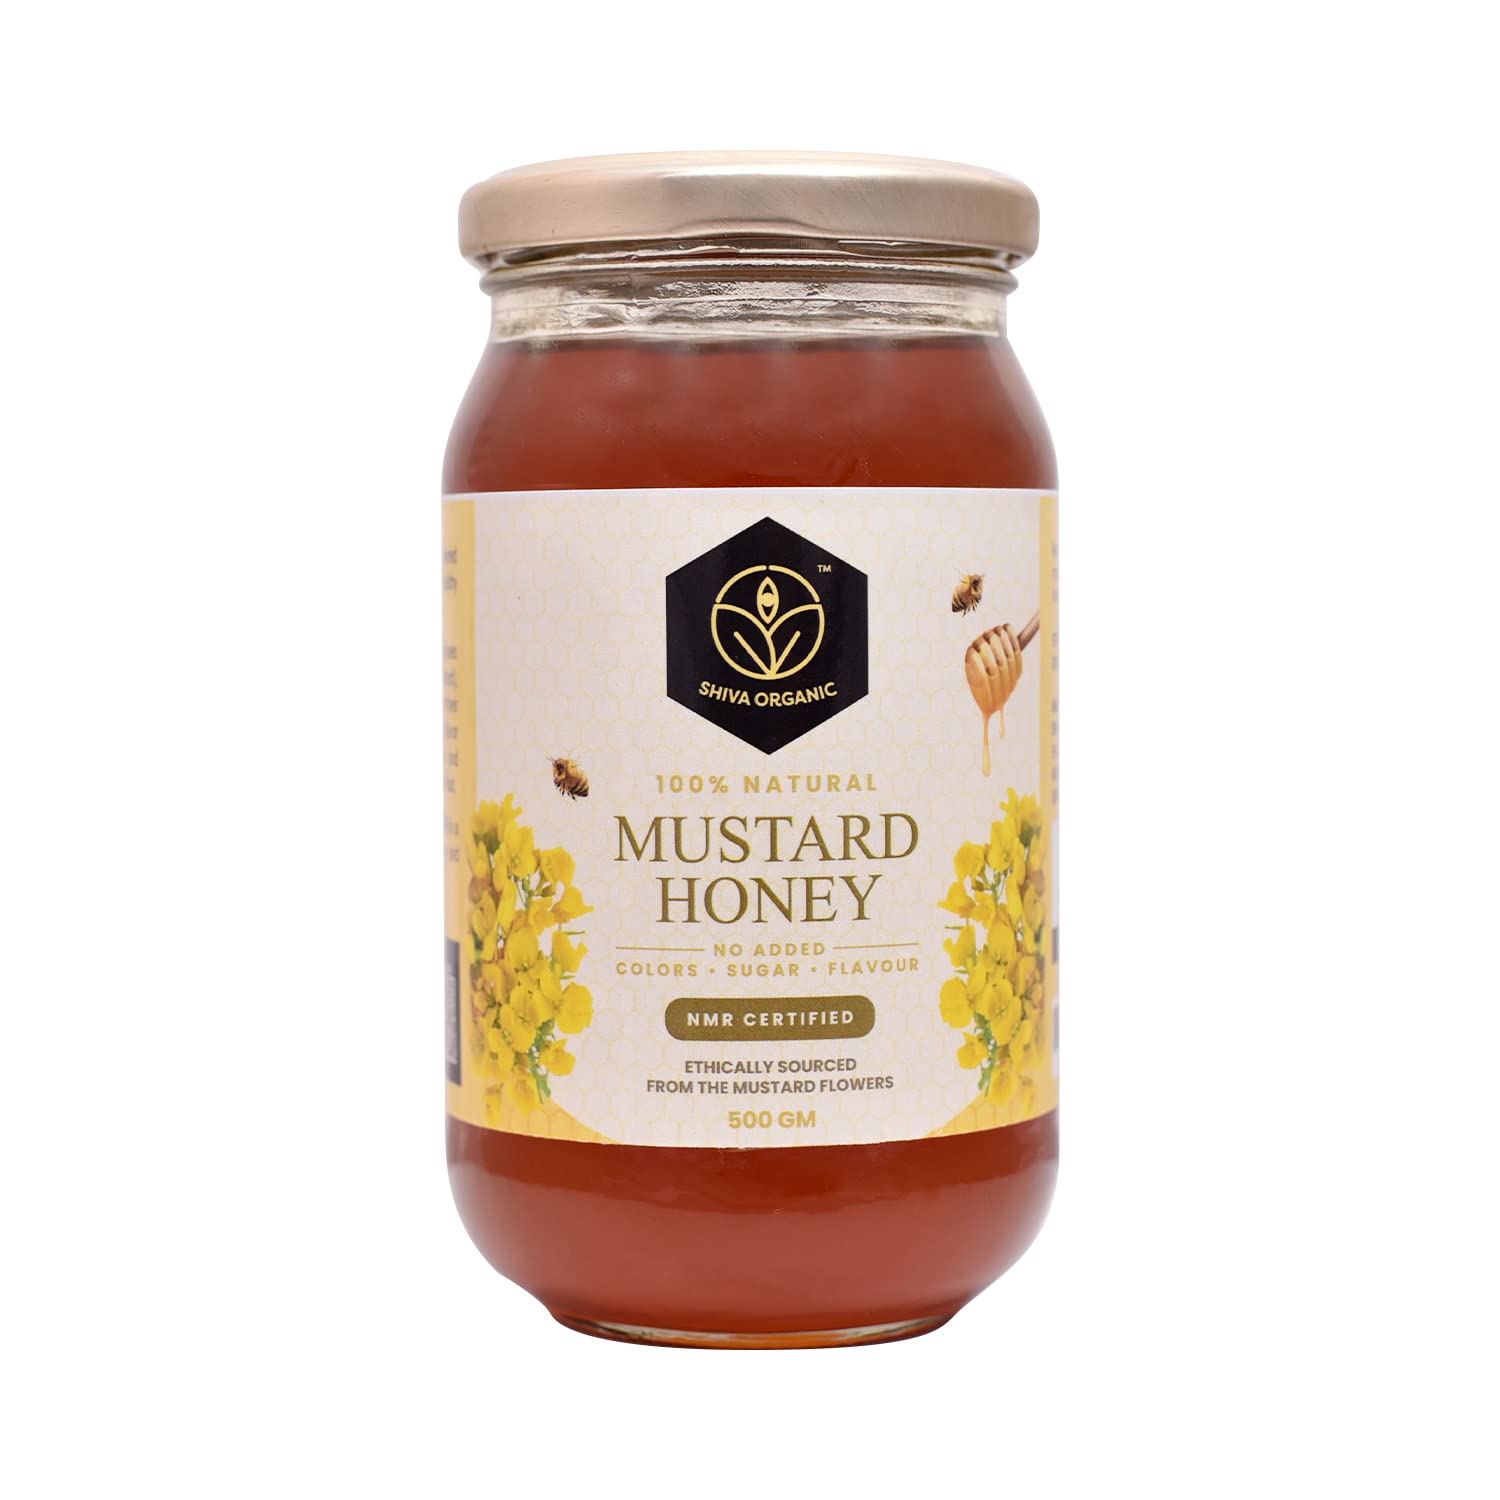 Shiva Organic’s Mustard Honey